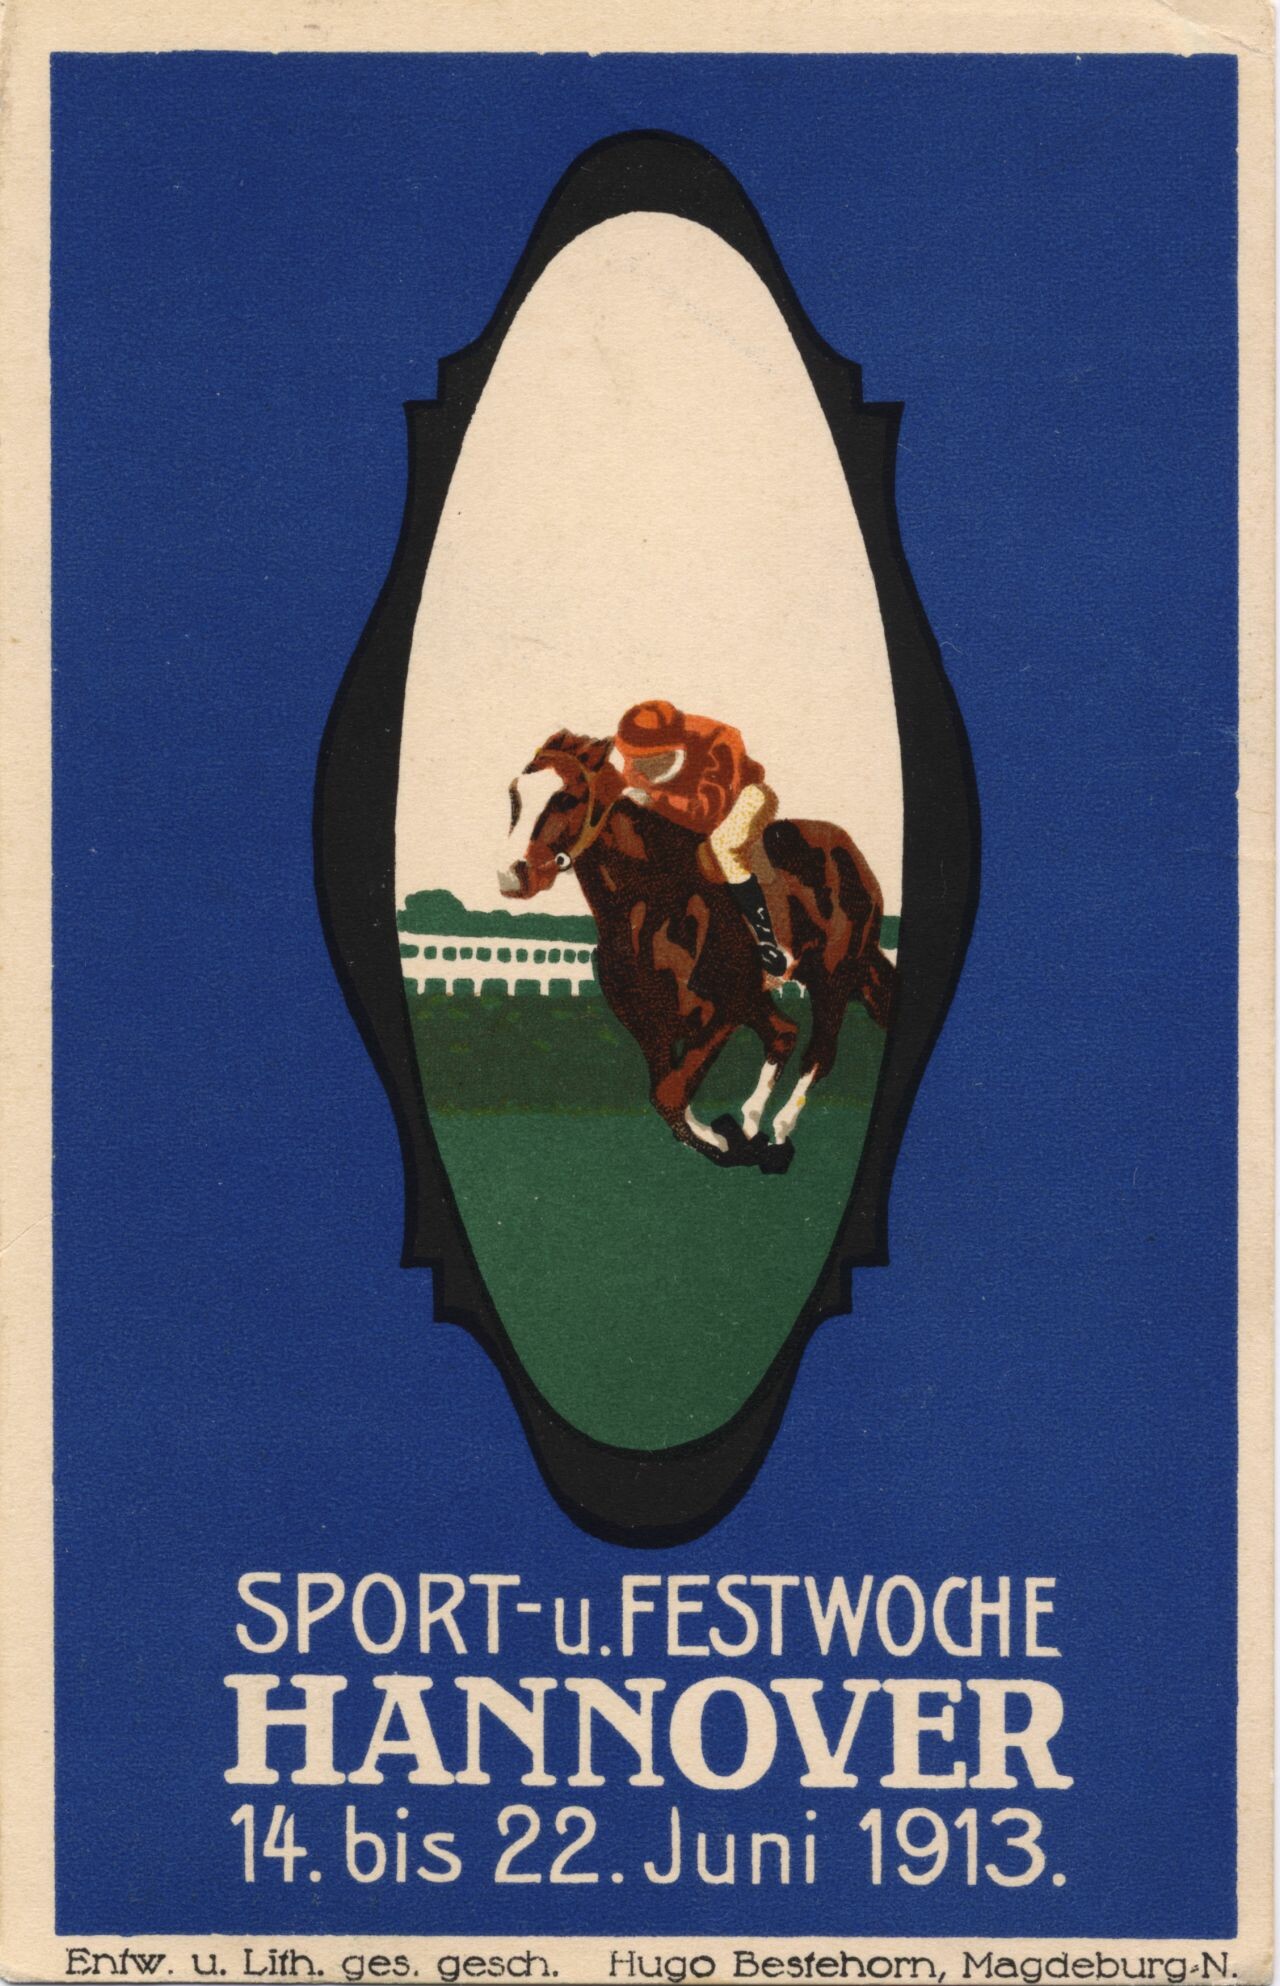 Sport- und Festwoche Hannover 14. bis 22. Juni 1913 (Postkarte), Entwurf und Lithographie: H. Bestehorn, Magdeburg; Historisches Museum Hannover